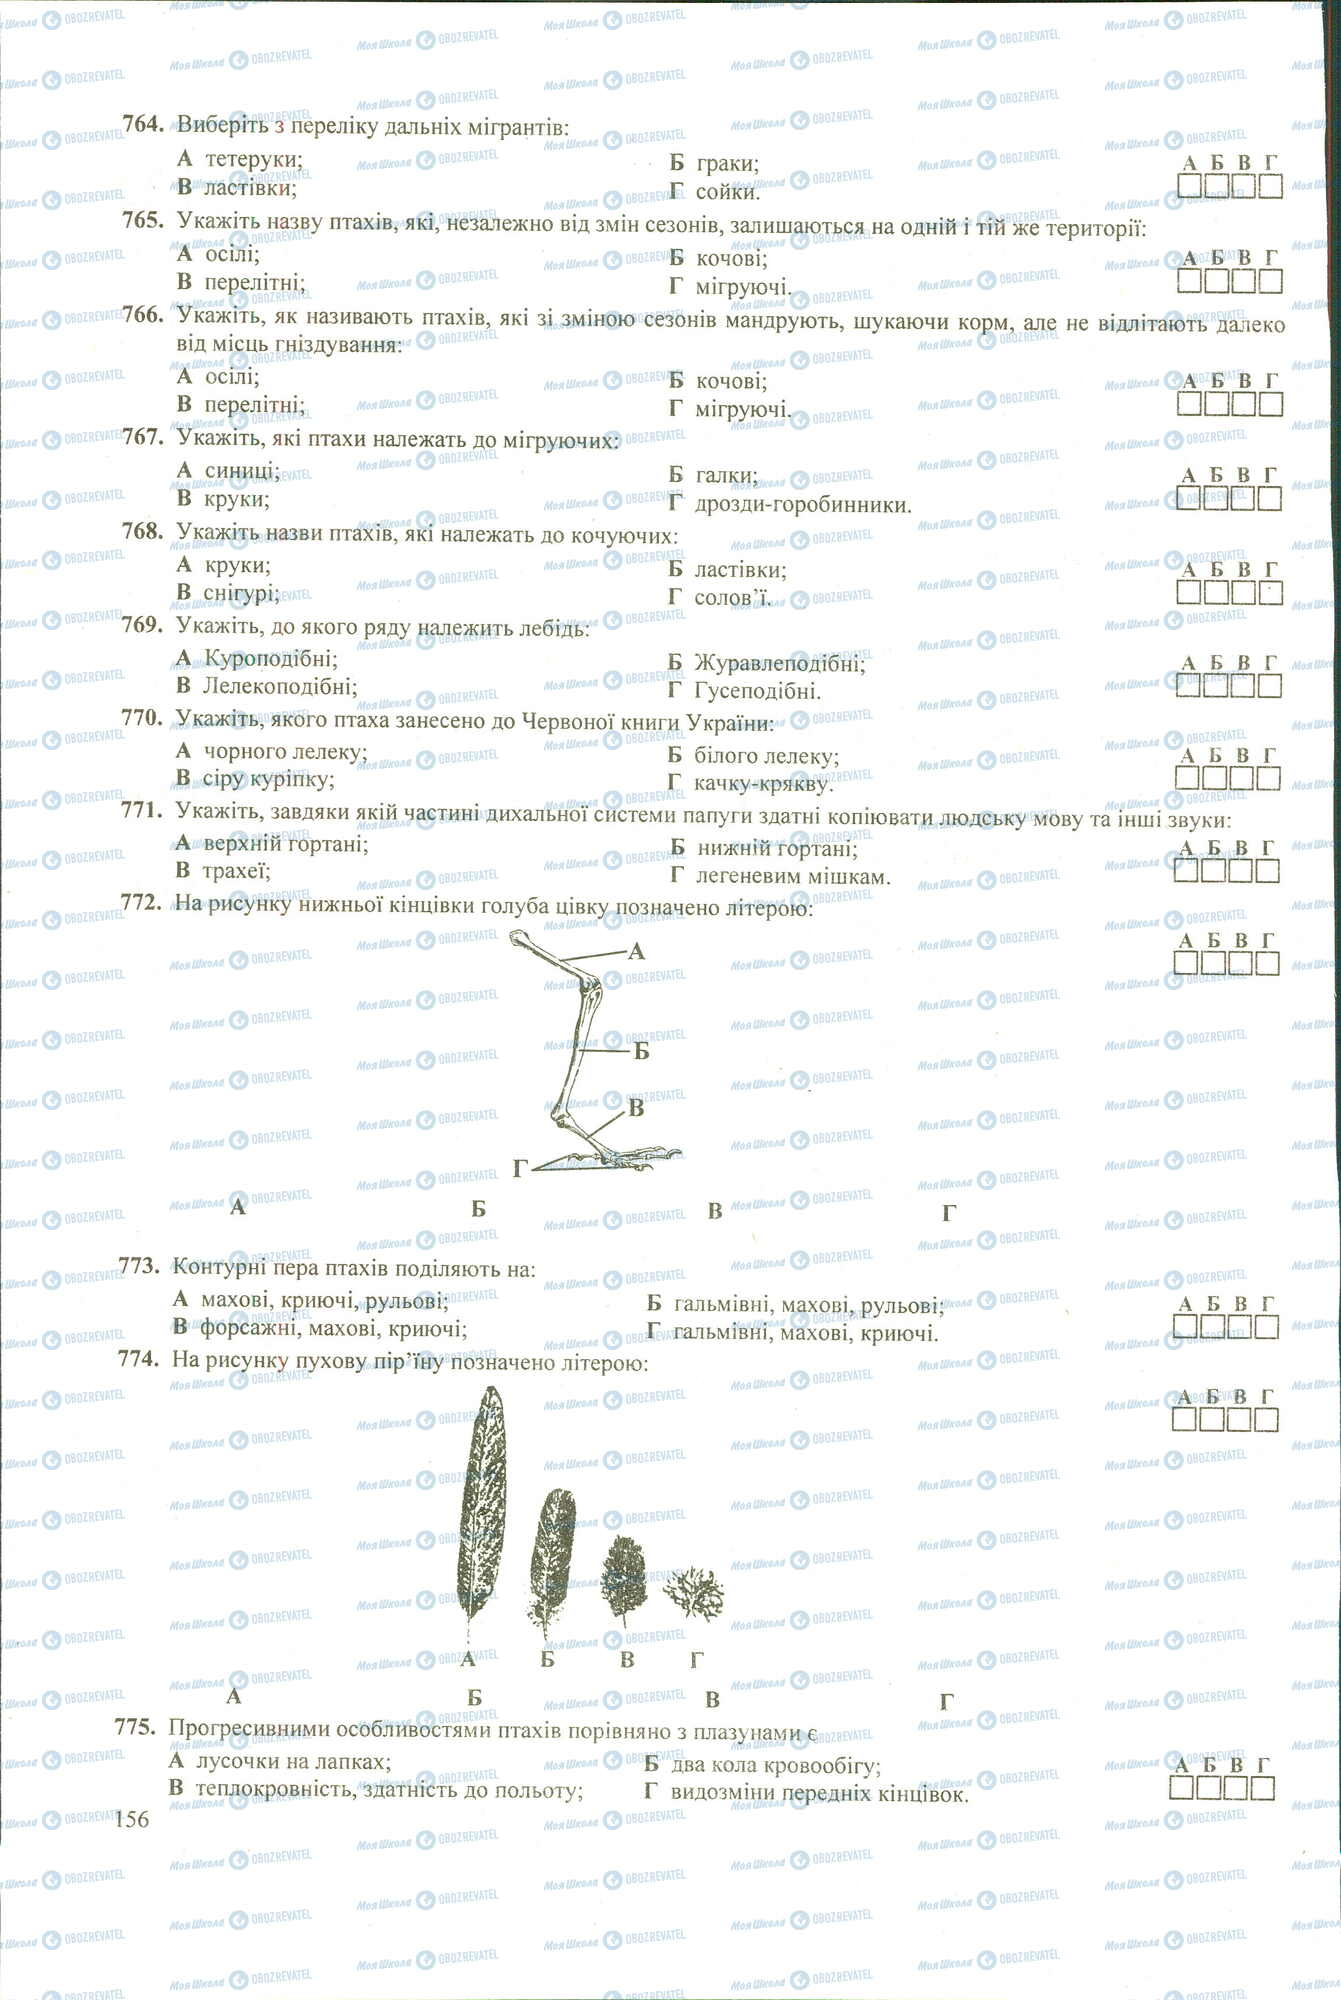 ЗНО Биология 11 класс страница 764-775